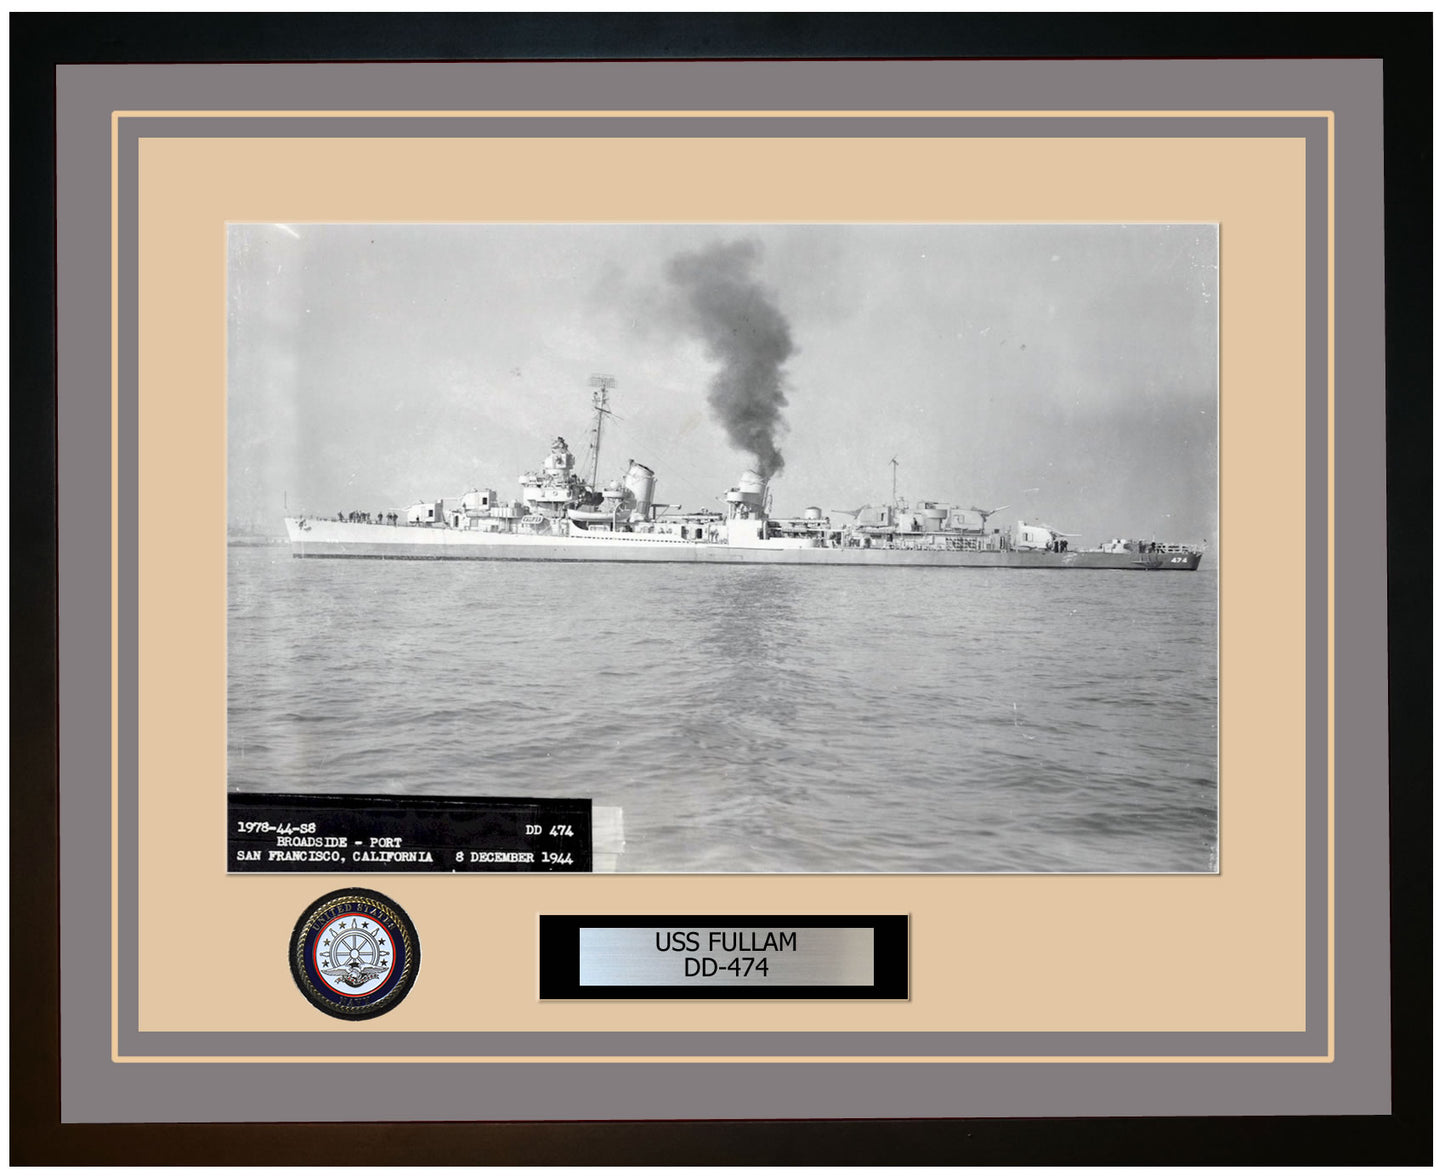 USS FULLAM DD-474 Framed Navy Ship Photo Grey